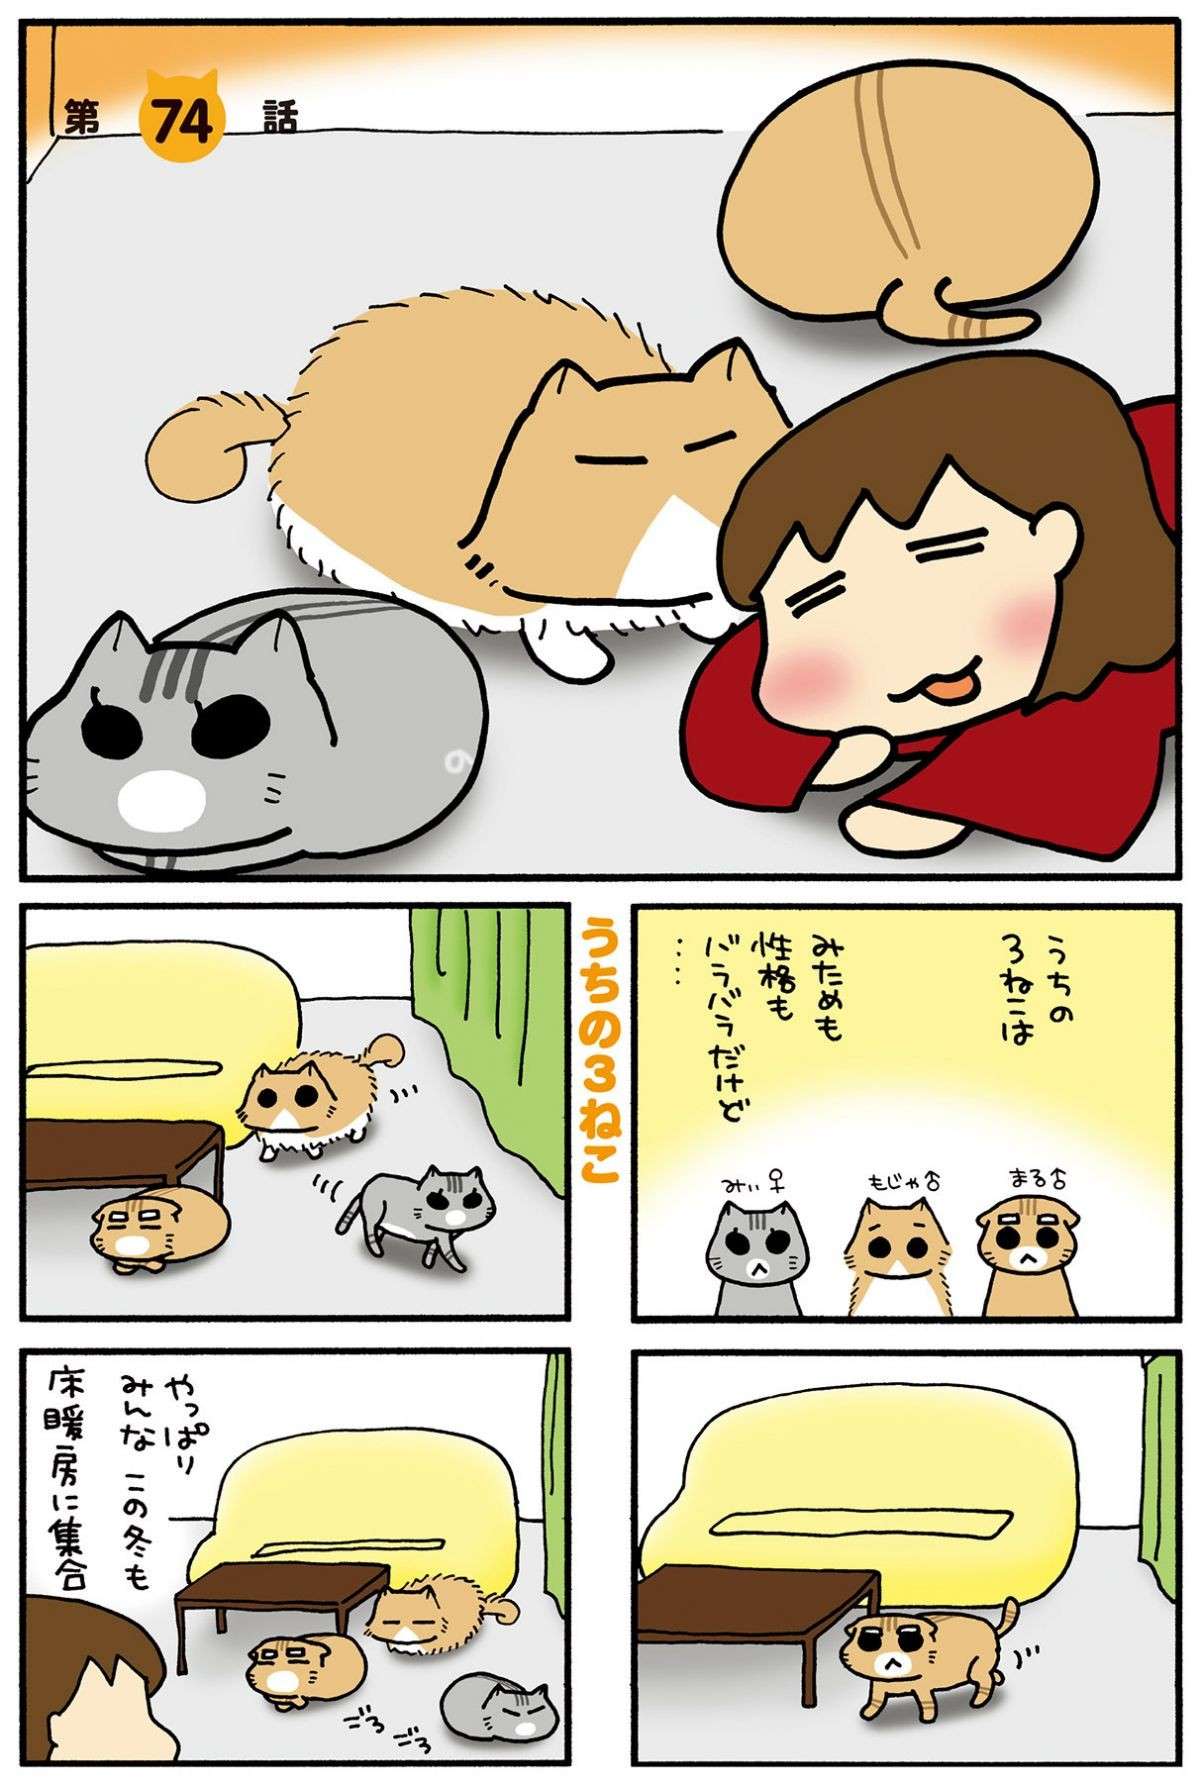 「いや、よくねえよ」猫のトイレの疑問、解消はされたものの...！／うちの3ねこ uchinosanneko04_015.jpg